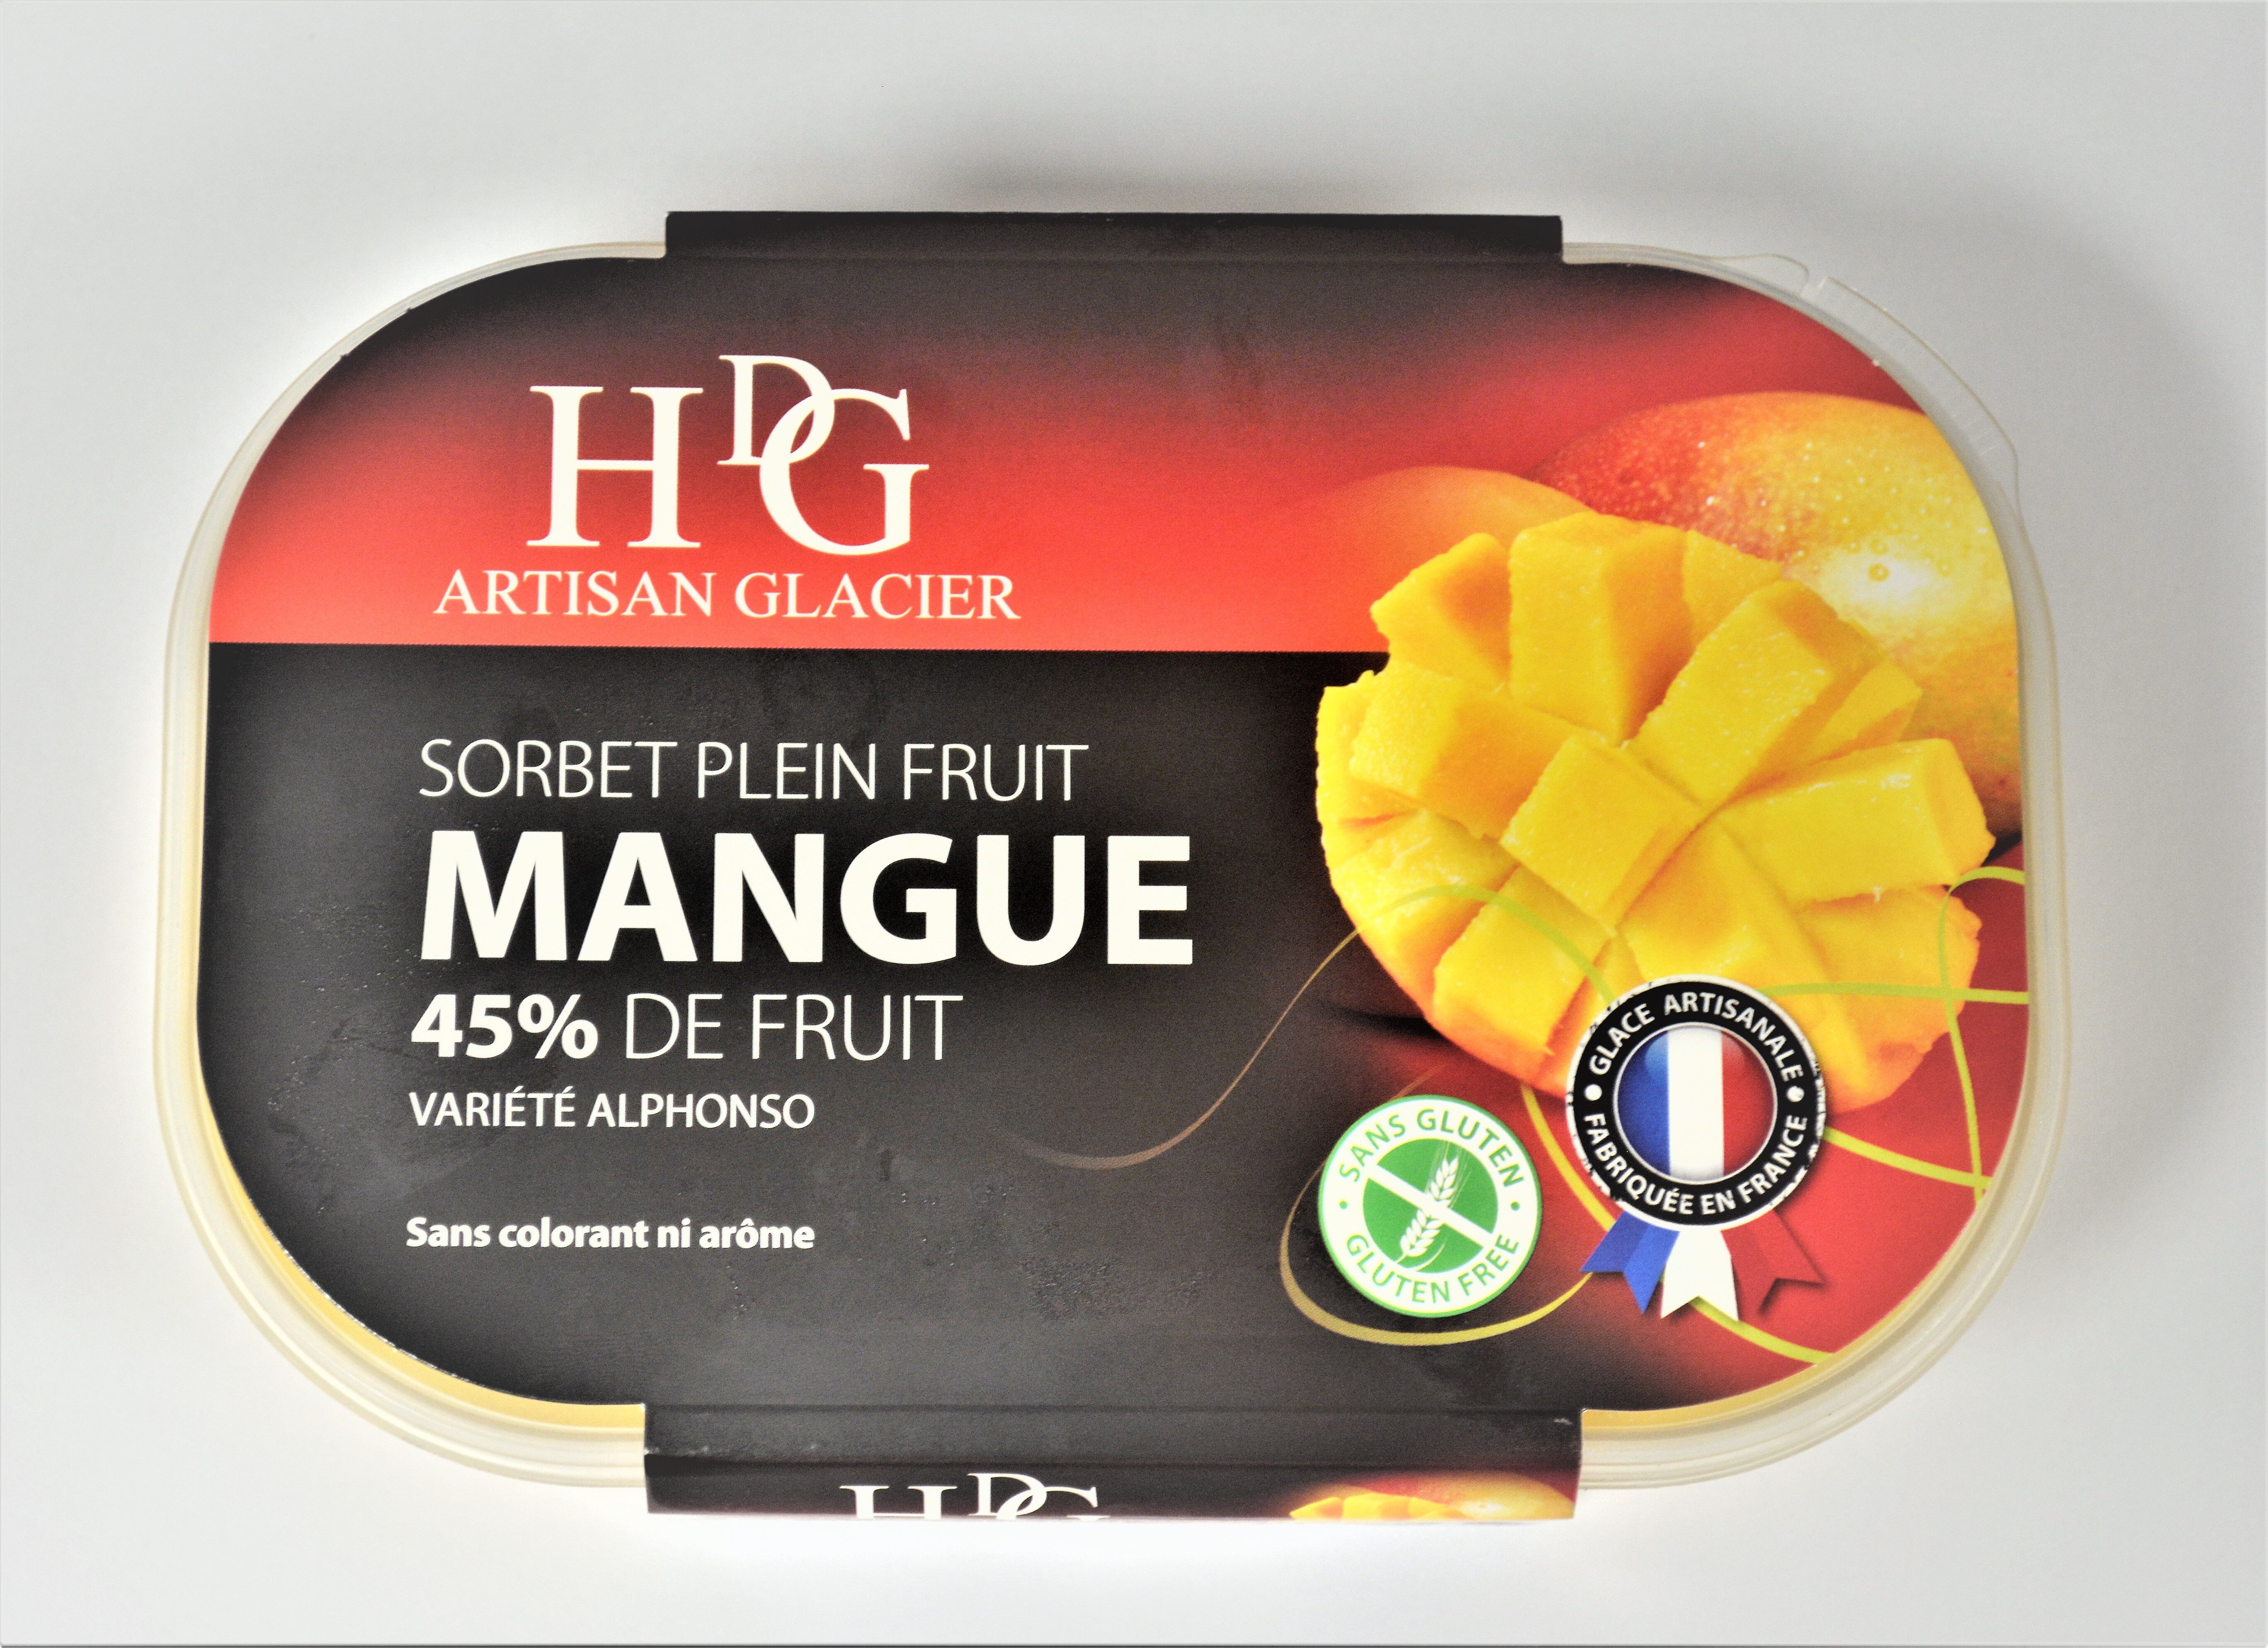 Sorbet plein fruit MANGUE, 45 % de fruit - Product - fr